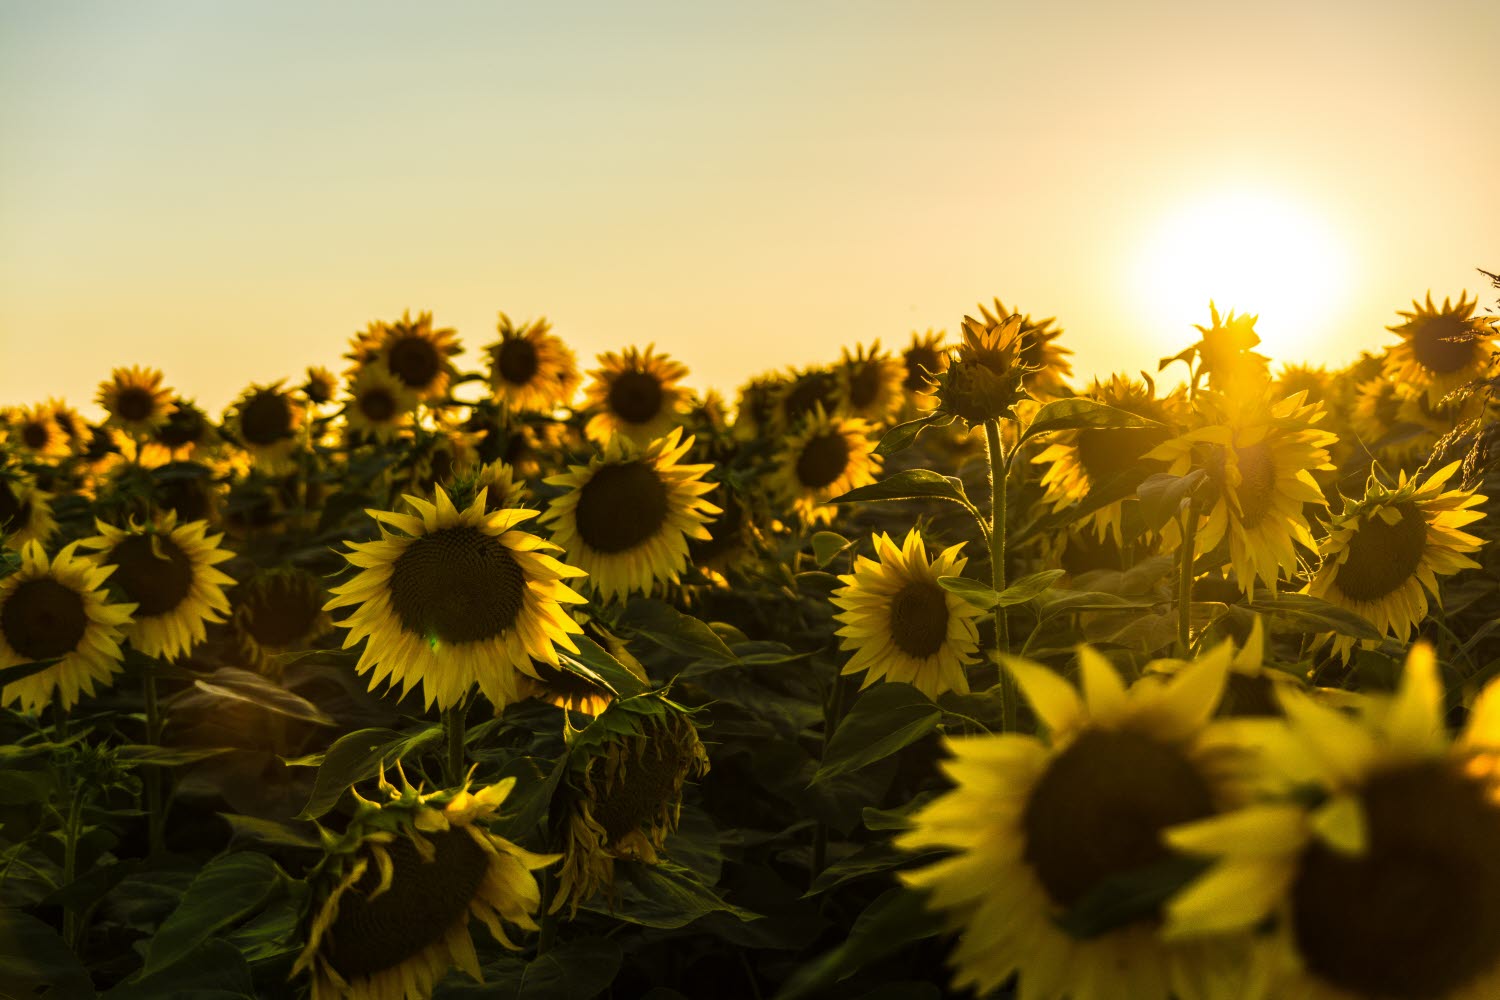 Sunflower, solros, sensommar, late summer, äng, meadow, gul, yellow, blå, blue, himmel, sky, blommor, flower, solnedgång, sunset